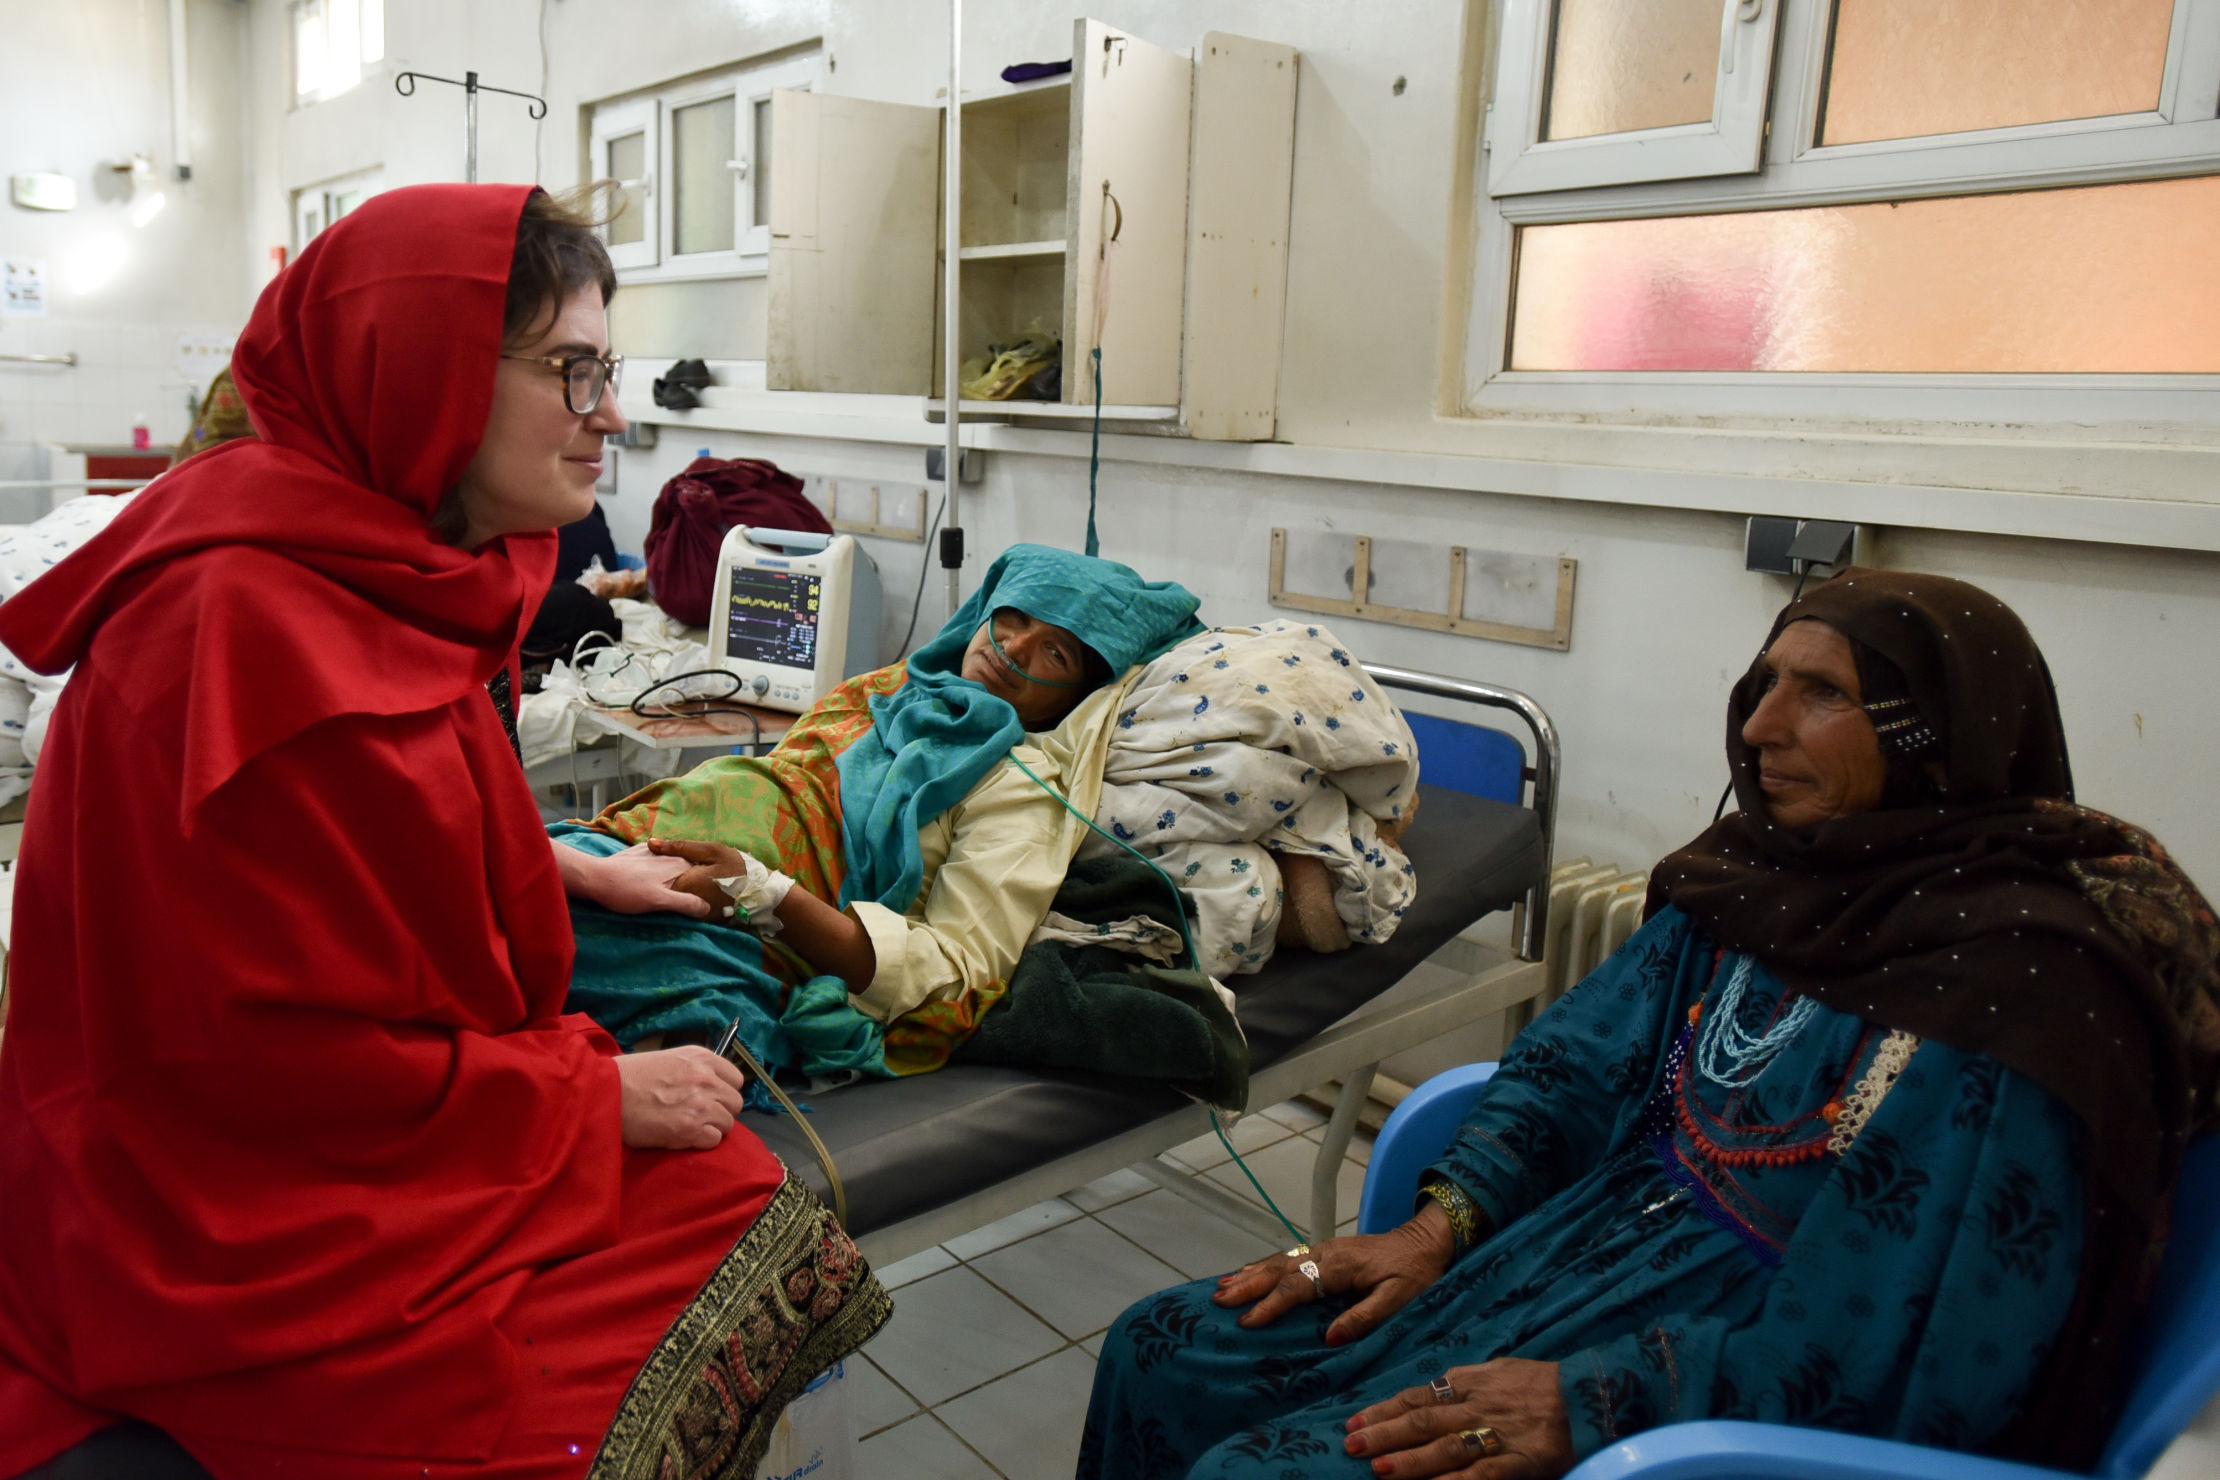 Dr Séverine Caluwaerts, obstétricienne-gynécologue MSF et conseillère en santé des femmes OCB, s'entretient avec une mère et sa fille, une patiente de la maternité de Khost, en Afghanistan, qui se remet lentement d'une hémorragie post-partum après avoir accouché à la maison pendant cinq jours avant. Photo : Najiba Noori.